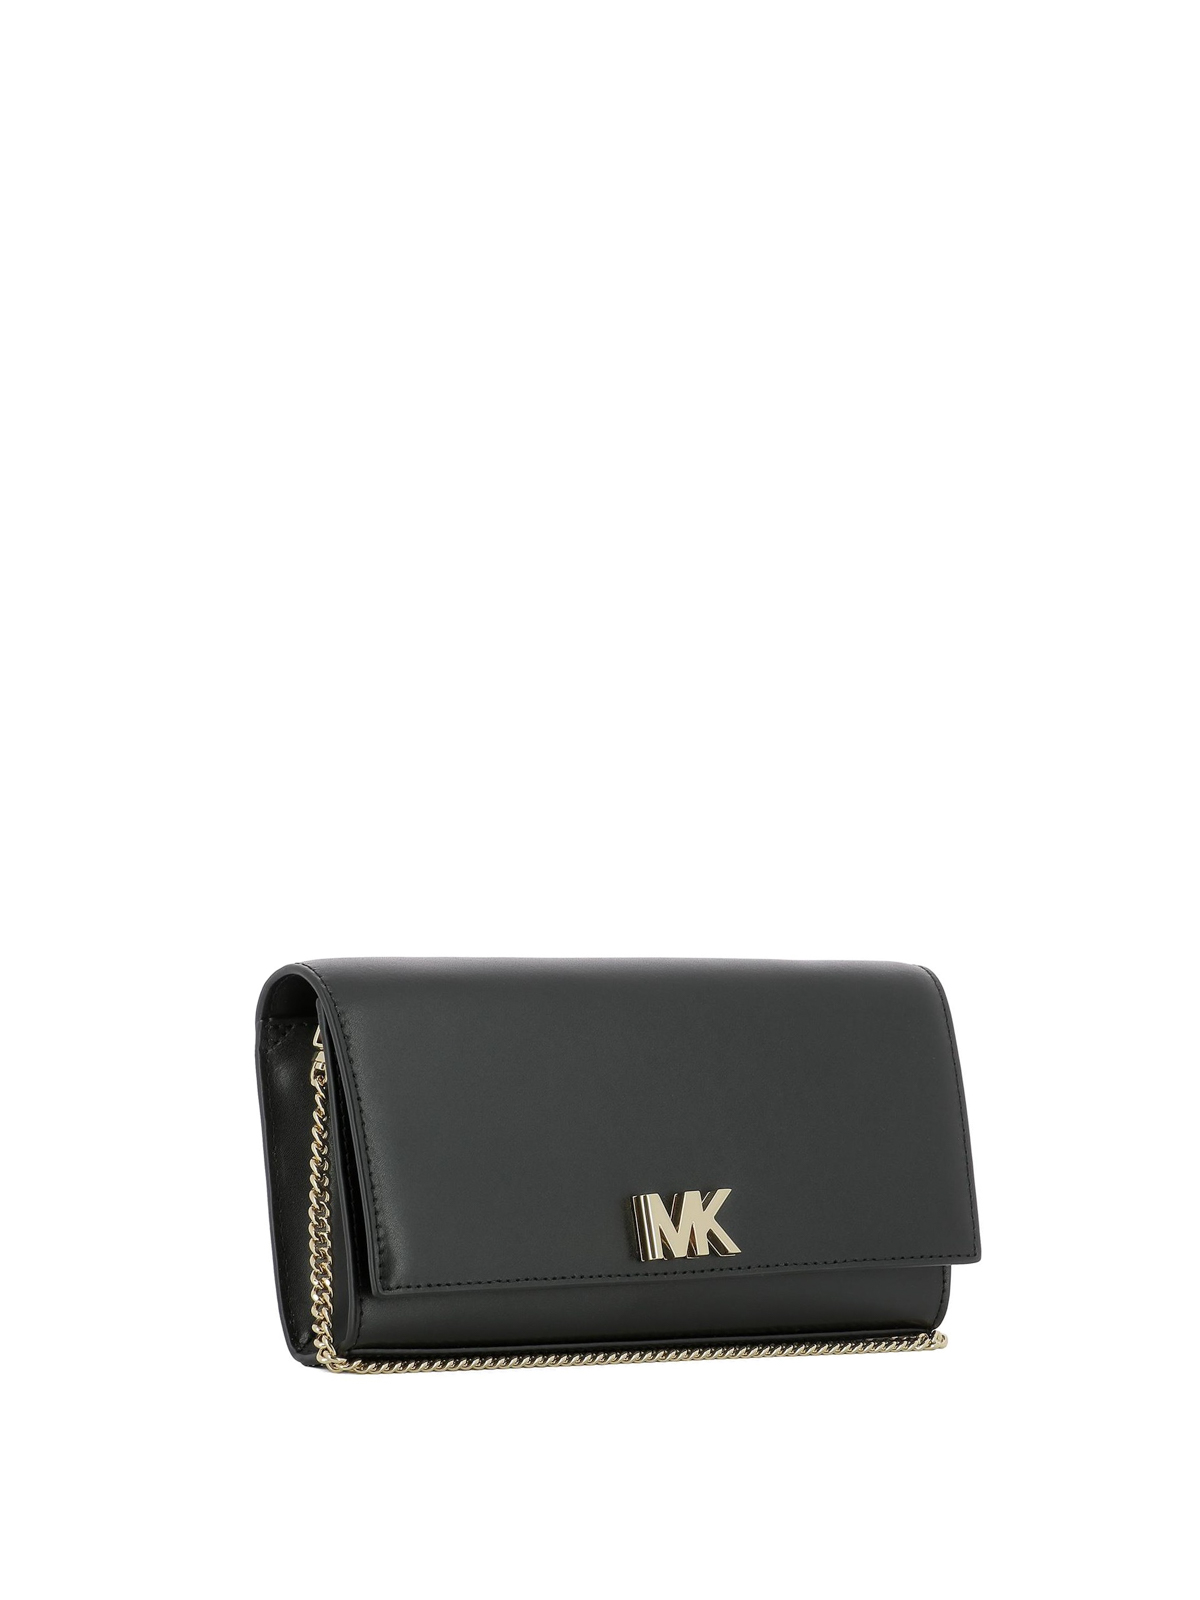 Michael Kors - Mott MK logo black 